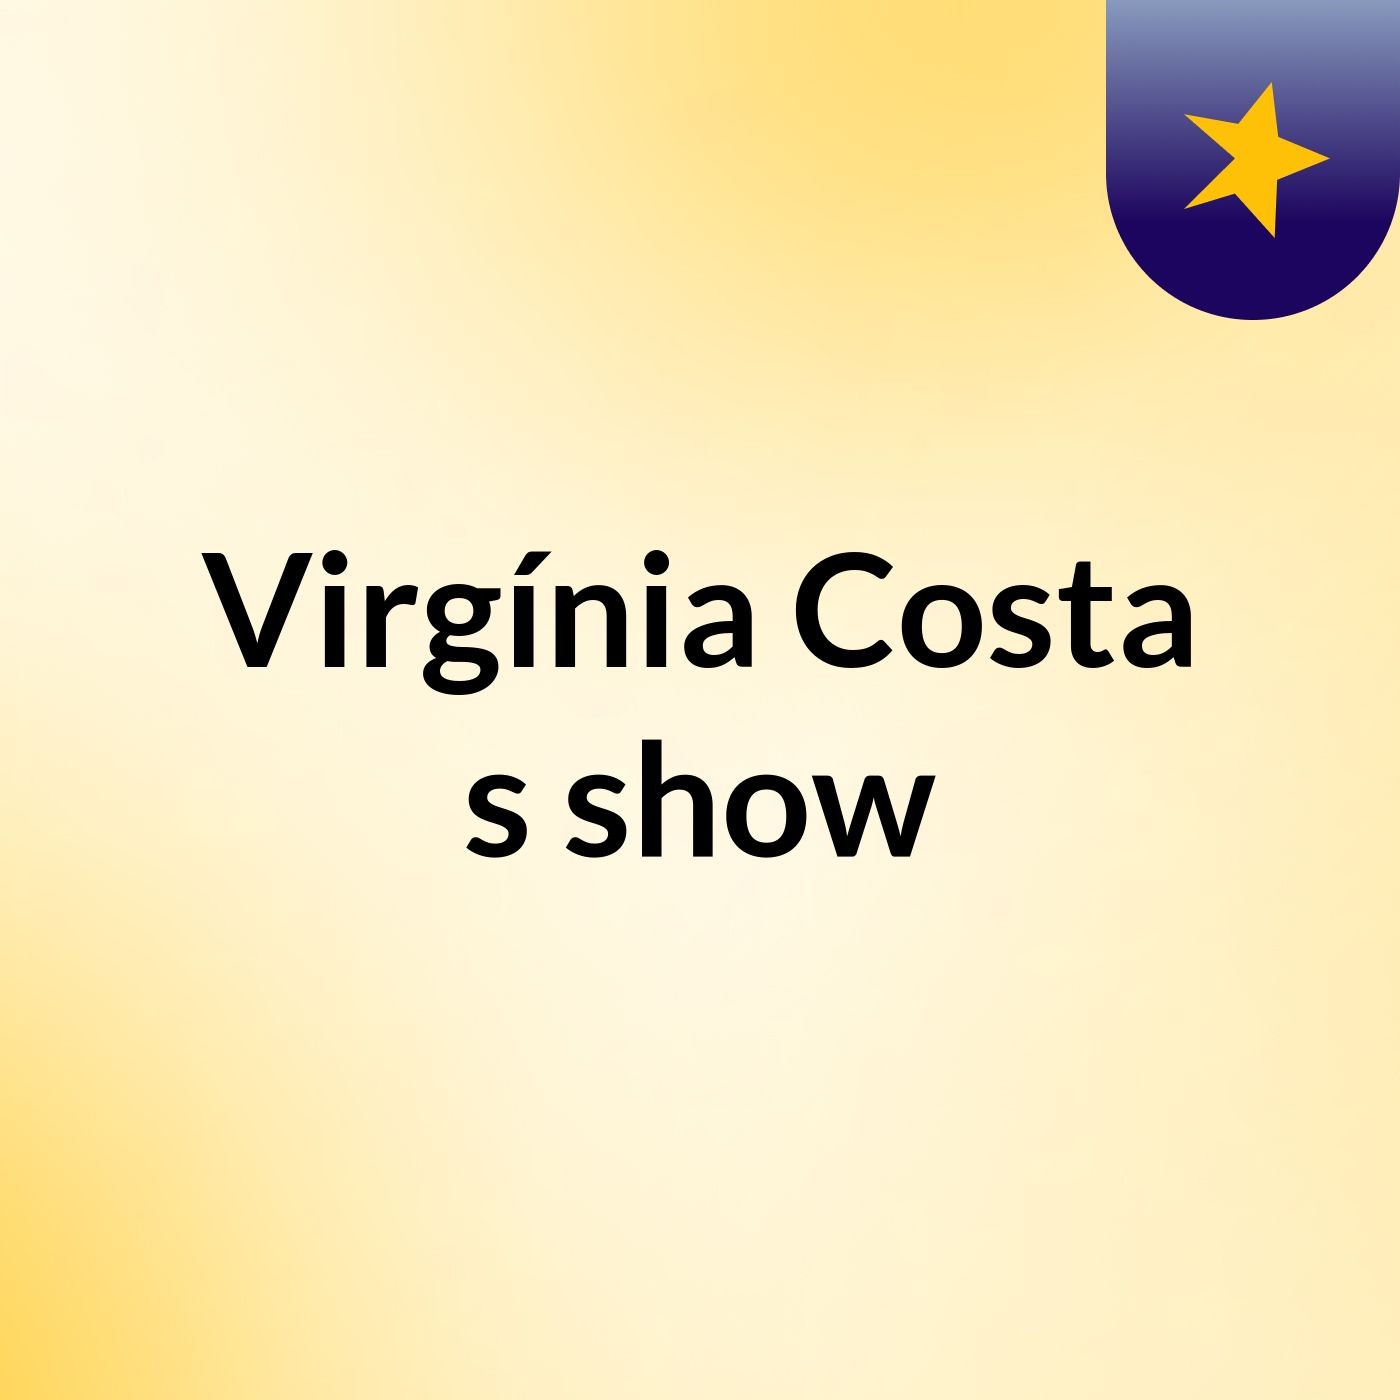 Virgínia Costa's show